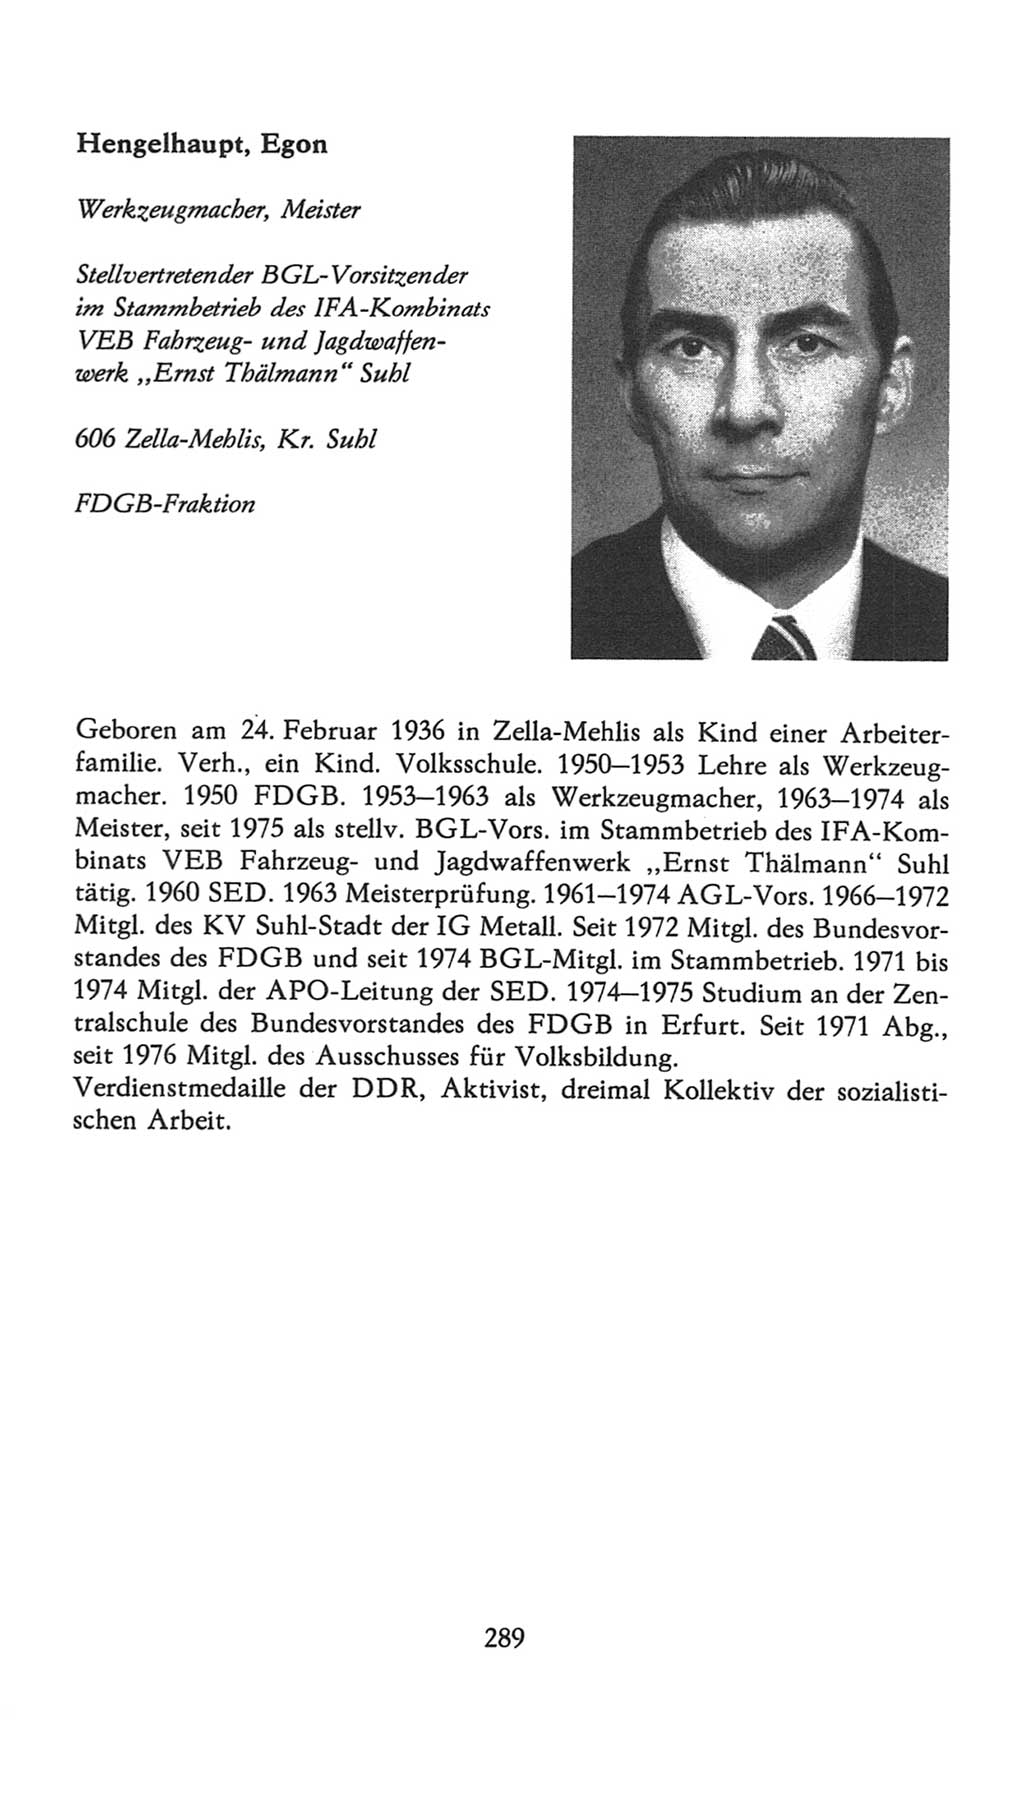 Volkskammer (VK) der Deutschen Demokratischen Republik (DDR), 7. Wahlperiode 1976-1981, Seite 289 (VK. DDR 7. WP. 1976-1981, S. 289)